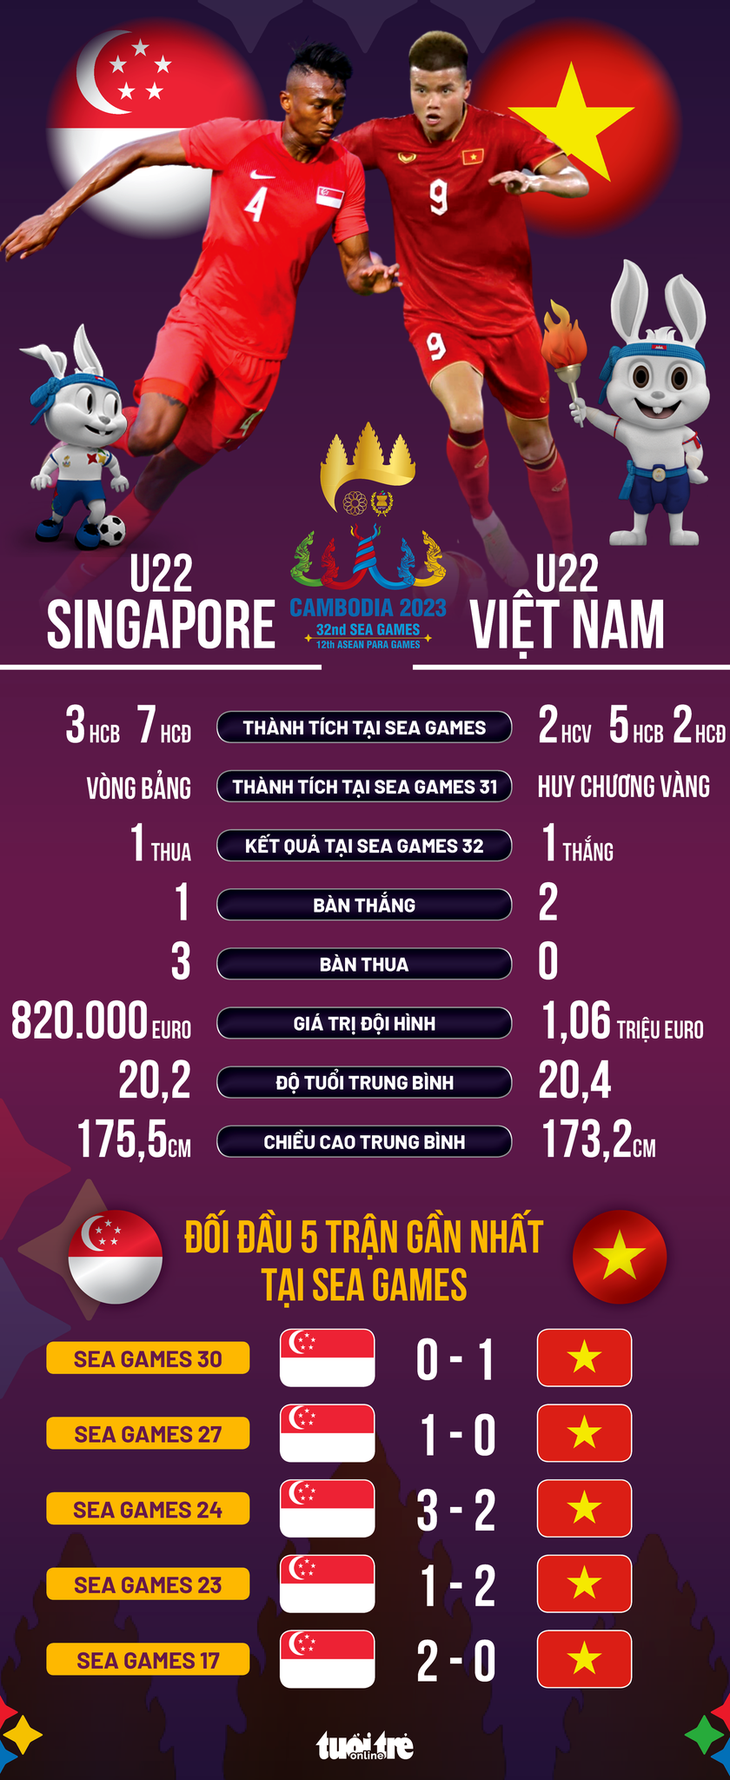 Tương quan giữa U22 Singapore và Việt Nam - Đồ họa: AN BÌNH